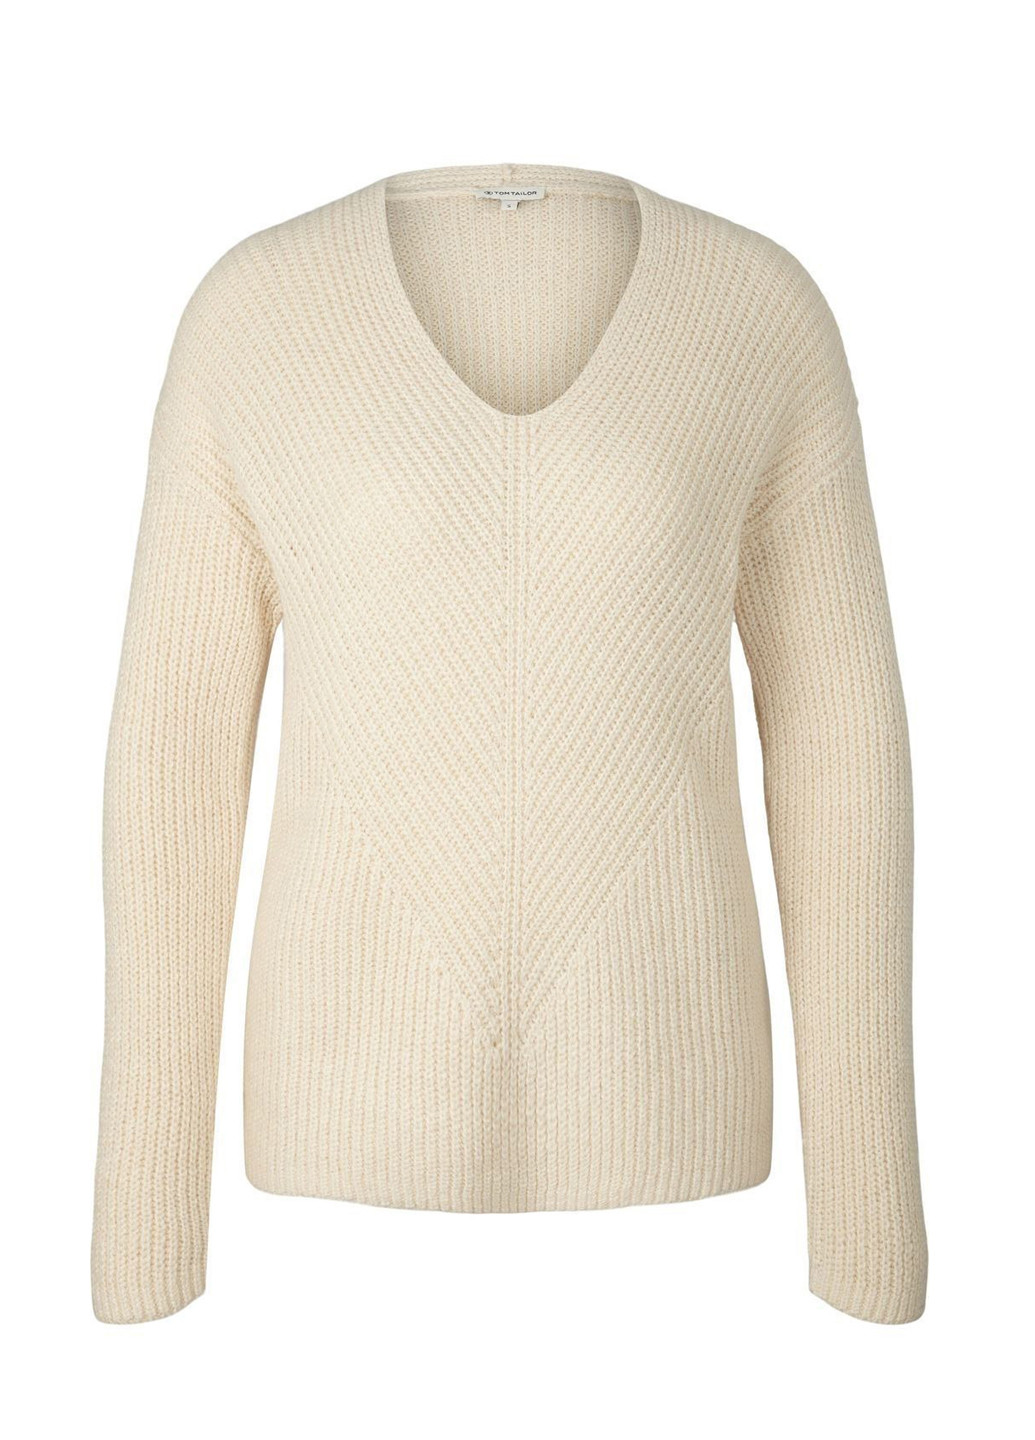 Молочный демисезонный пуловер пуловер Tom Tailor